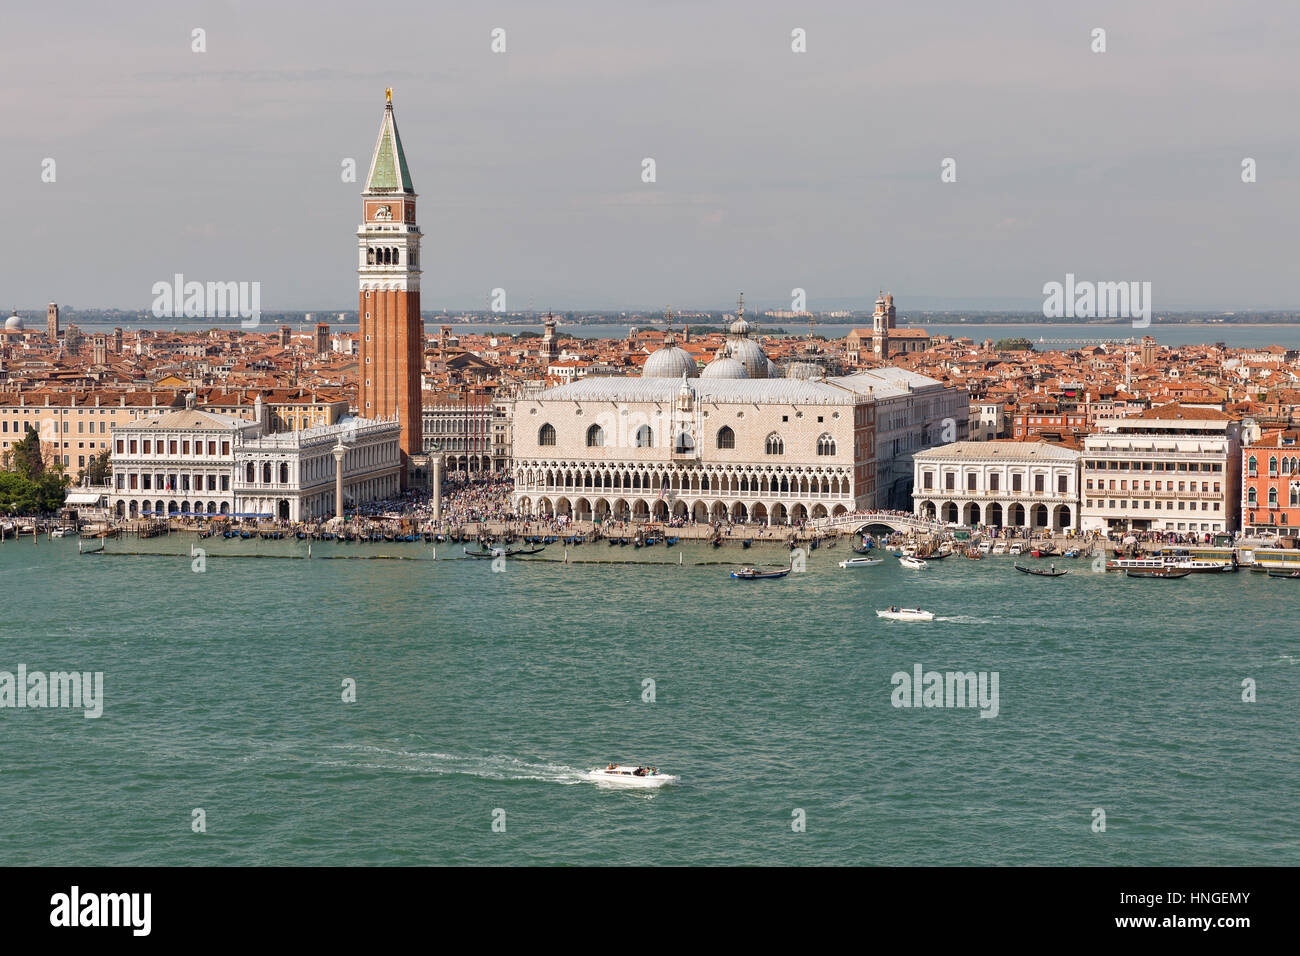 Vue aérienne sur la lagune de Venise, en Italie avec le Palais des Doges, Le Campanile et la Place de San Marco. Banque D'Images